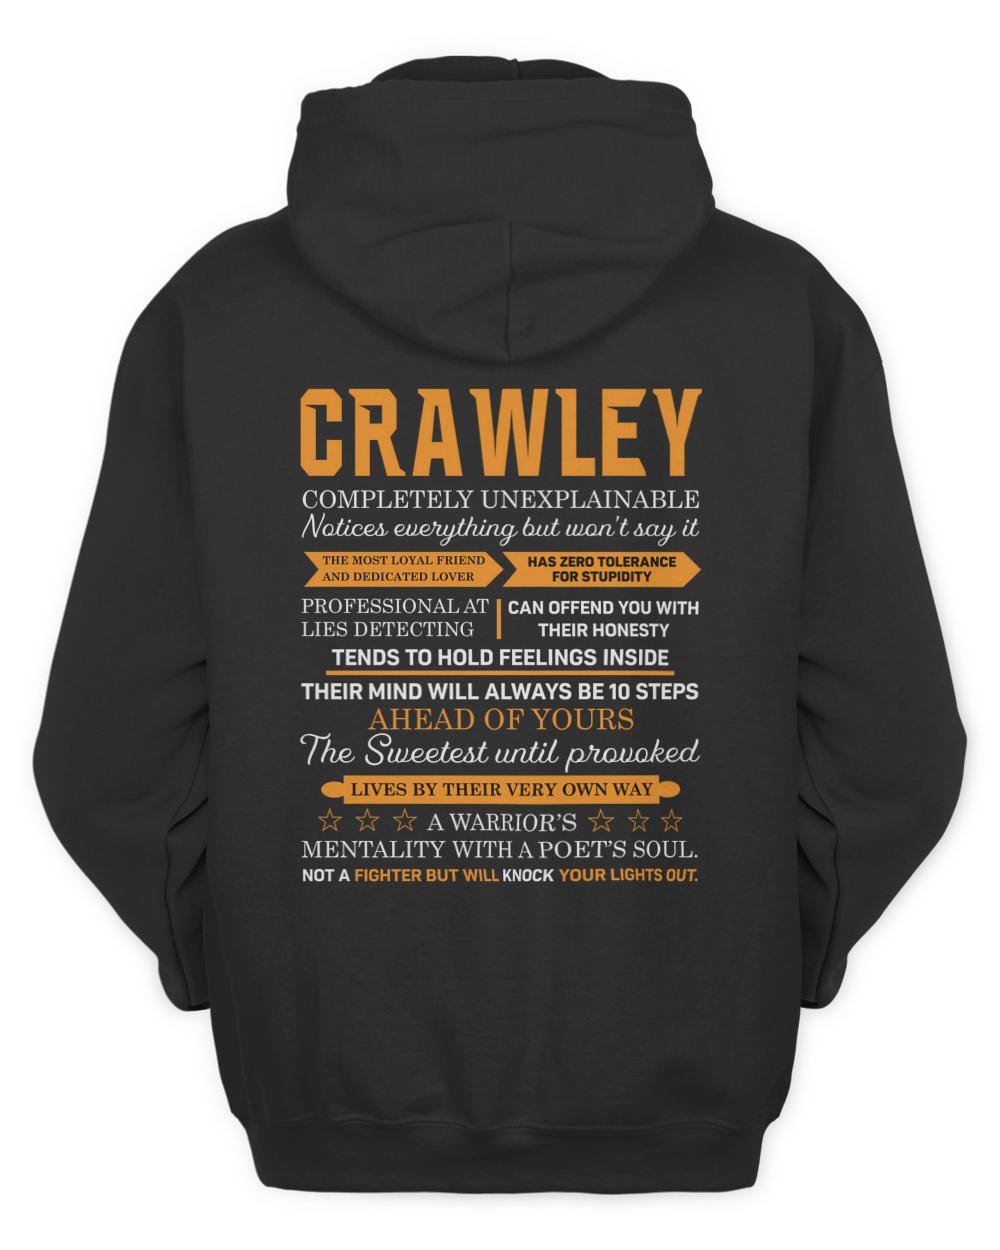 CRAWLEY-13K-N1-01